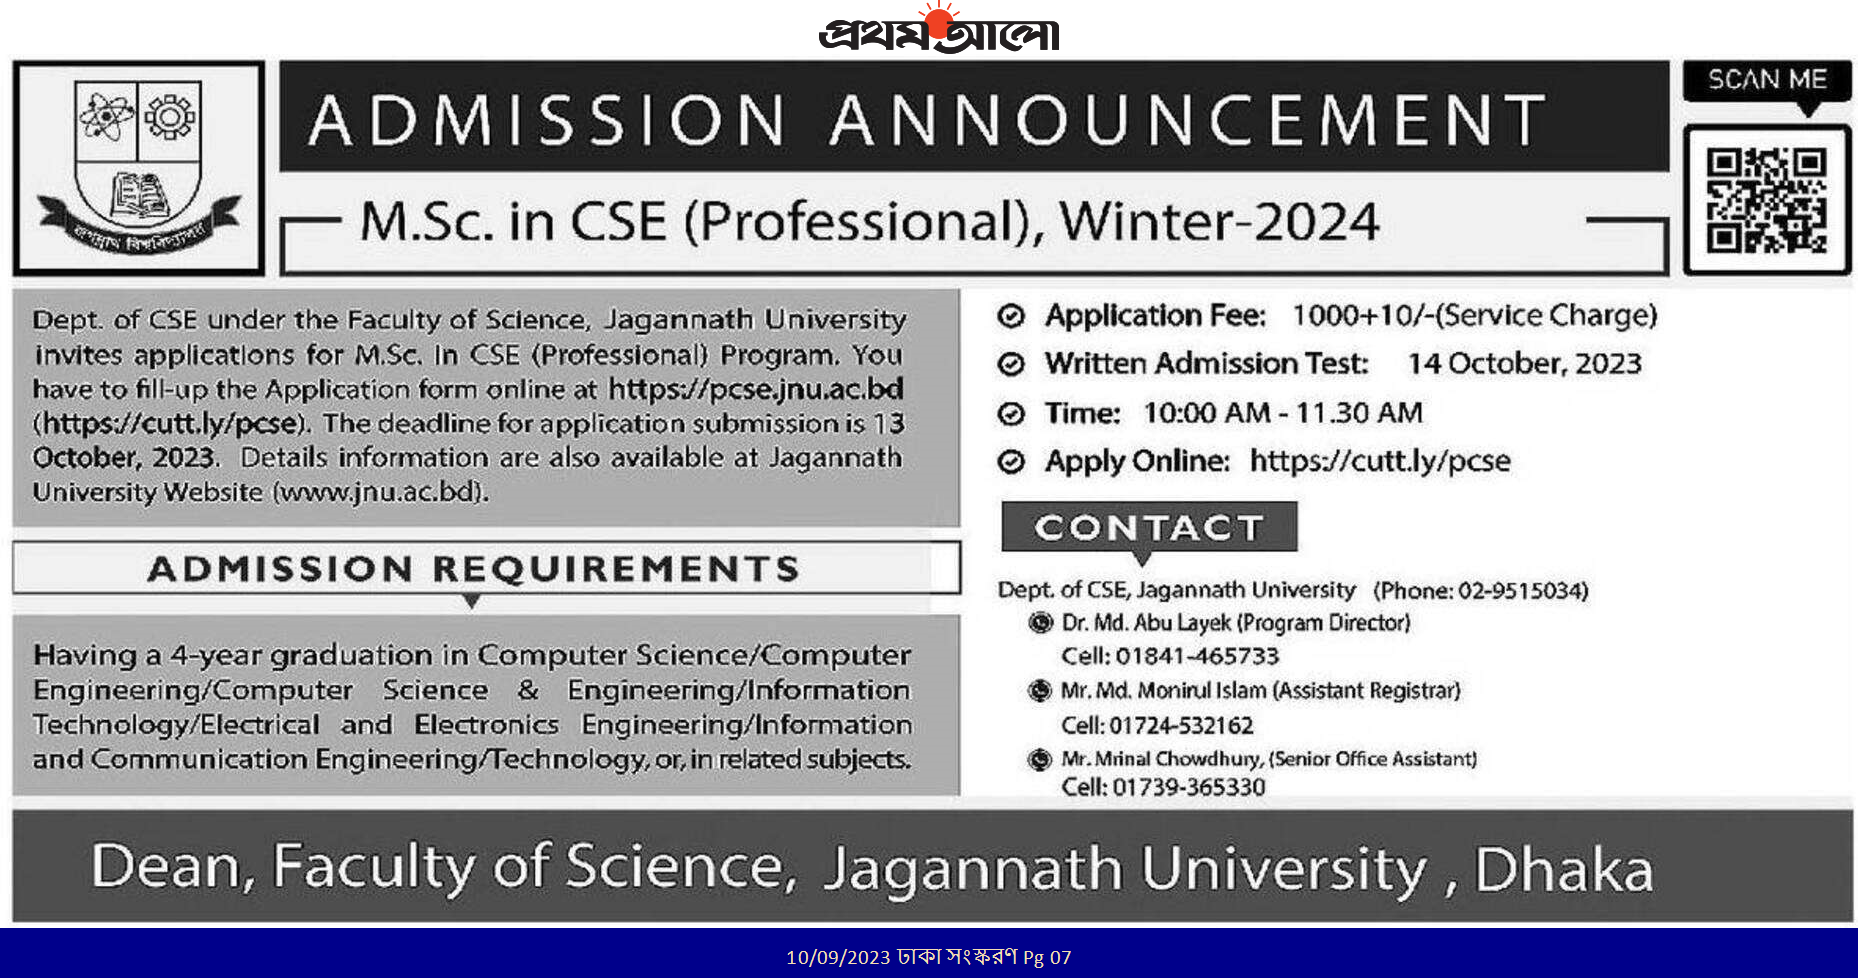 জগন্নাথ বিশ্ববিদ্যালয়ে মাস্টার্স ভর্তি বিজ্ঞপ্তি ২০২৩ - Jagannath University Masters Admission Circular 2023 - ভর্তি বিজ্ঞপ্তি ২০২৪ - Admission Circular 2024